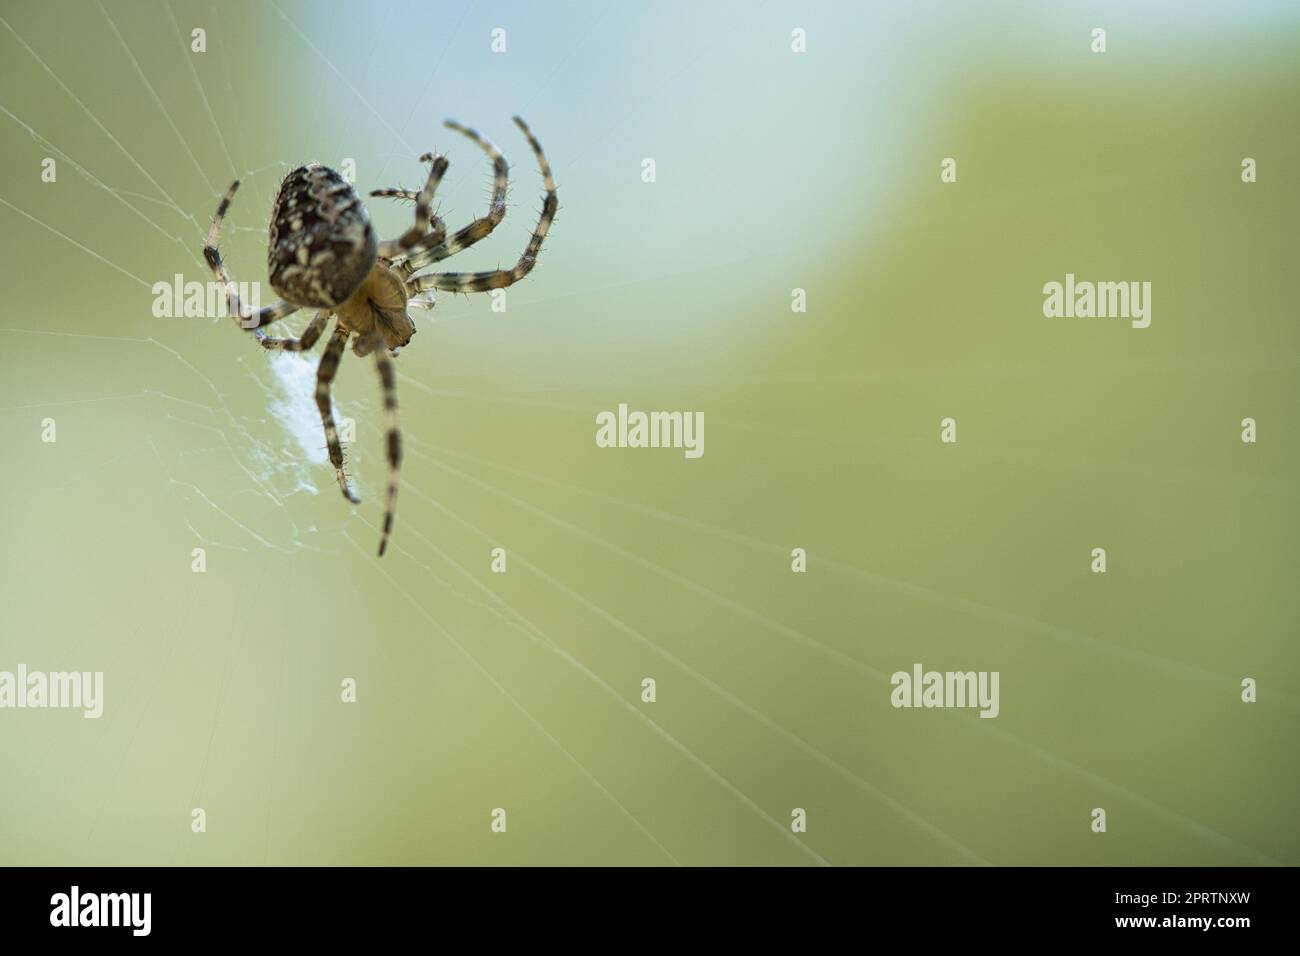 Kreuzspinne in einem Spinnennetz, lauert auf Beute. Unscharfer Hintergrund Stockfoto